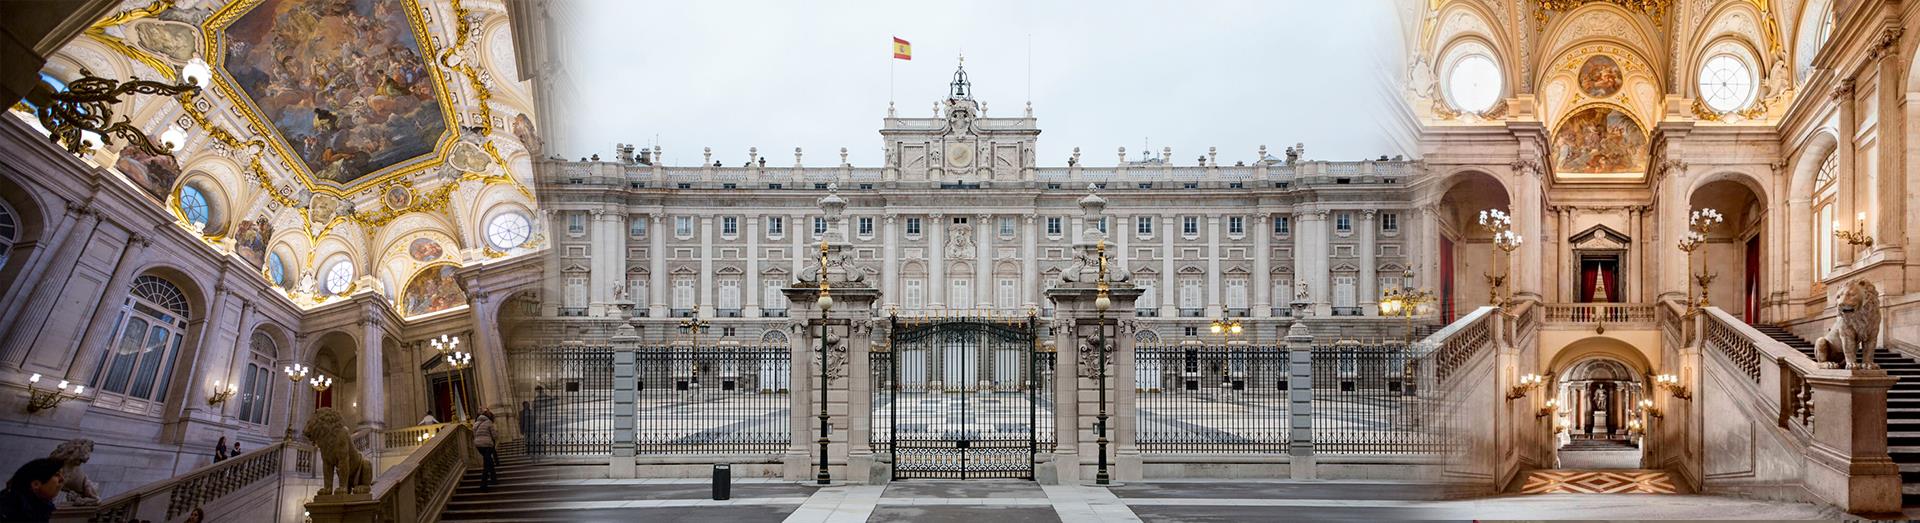 Essential-Madrid:-Prado-Museum-and-Royal-Palace-17